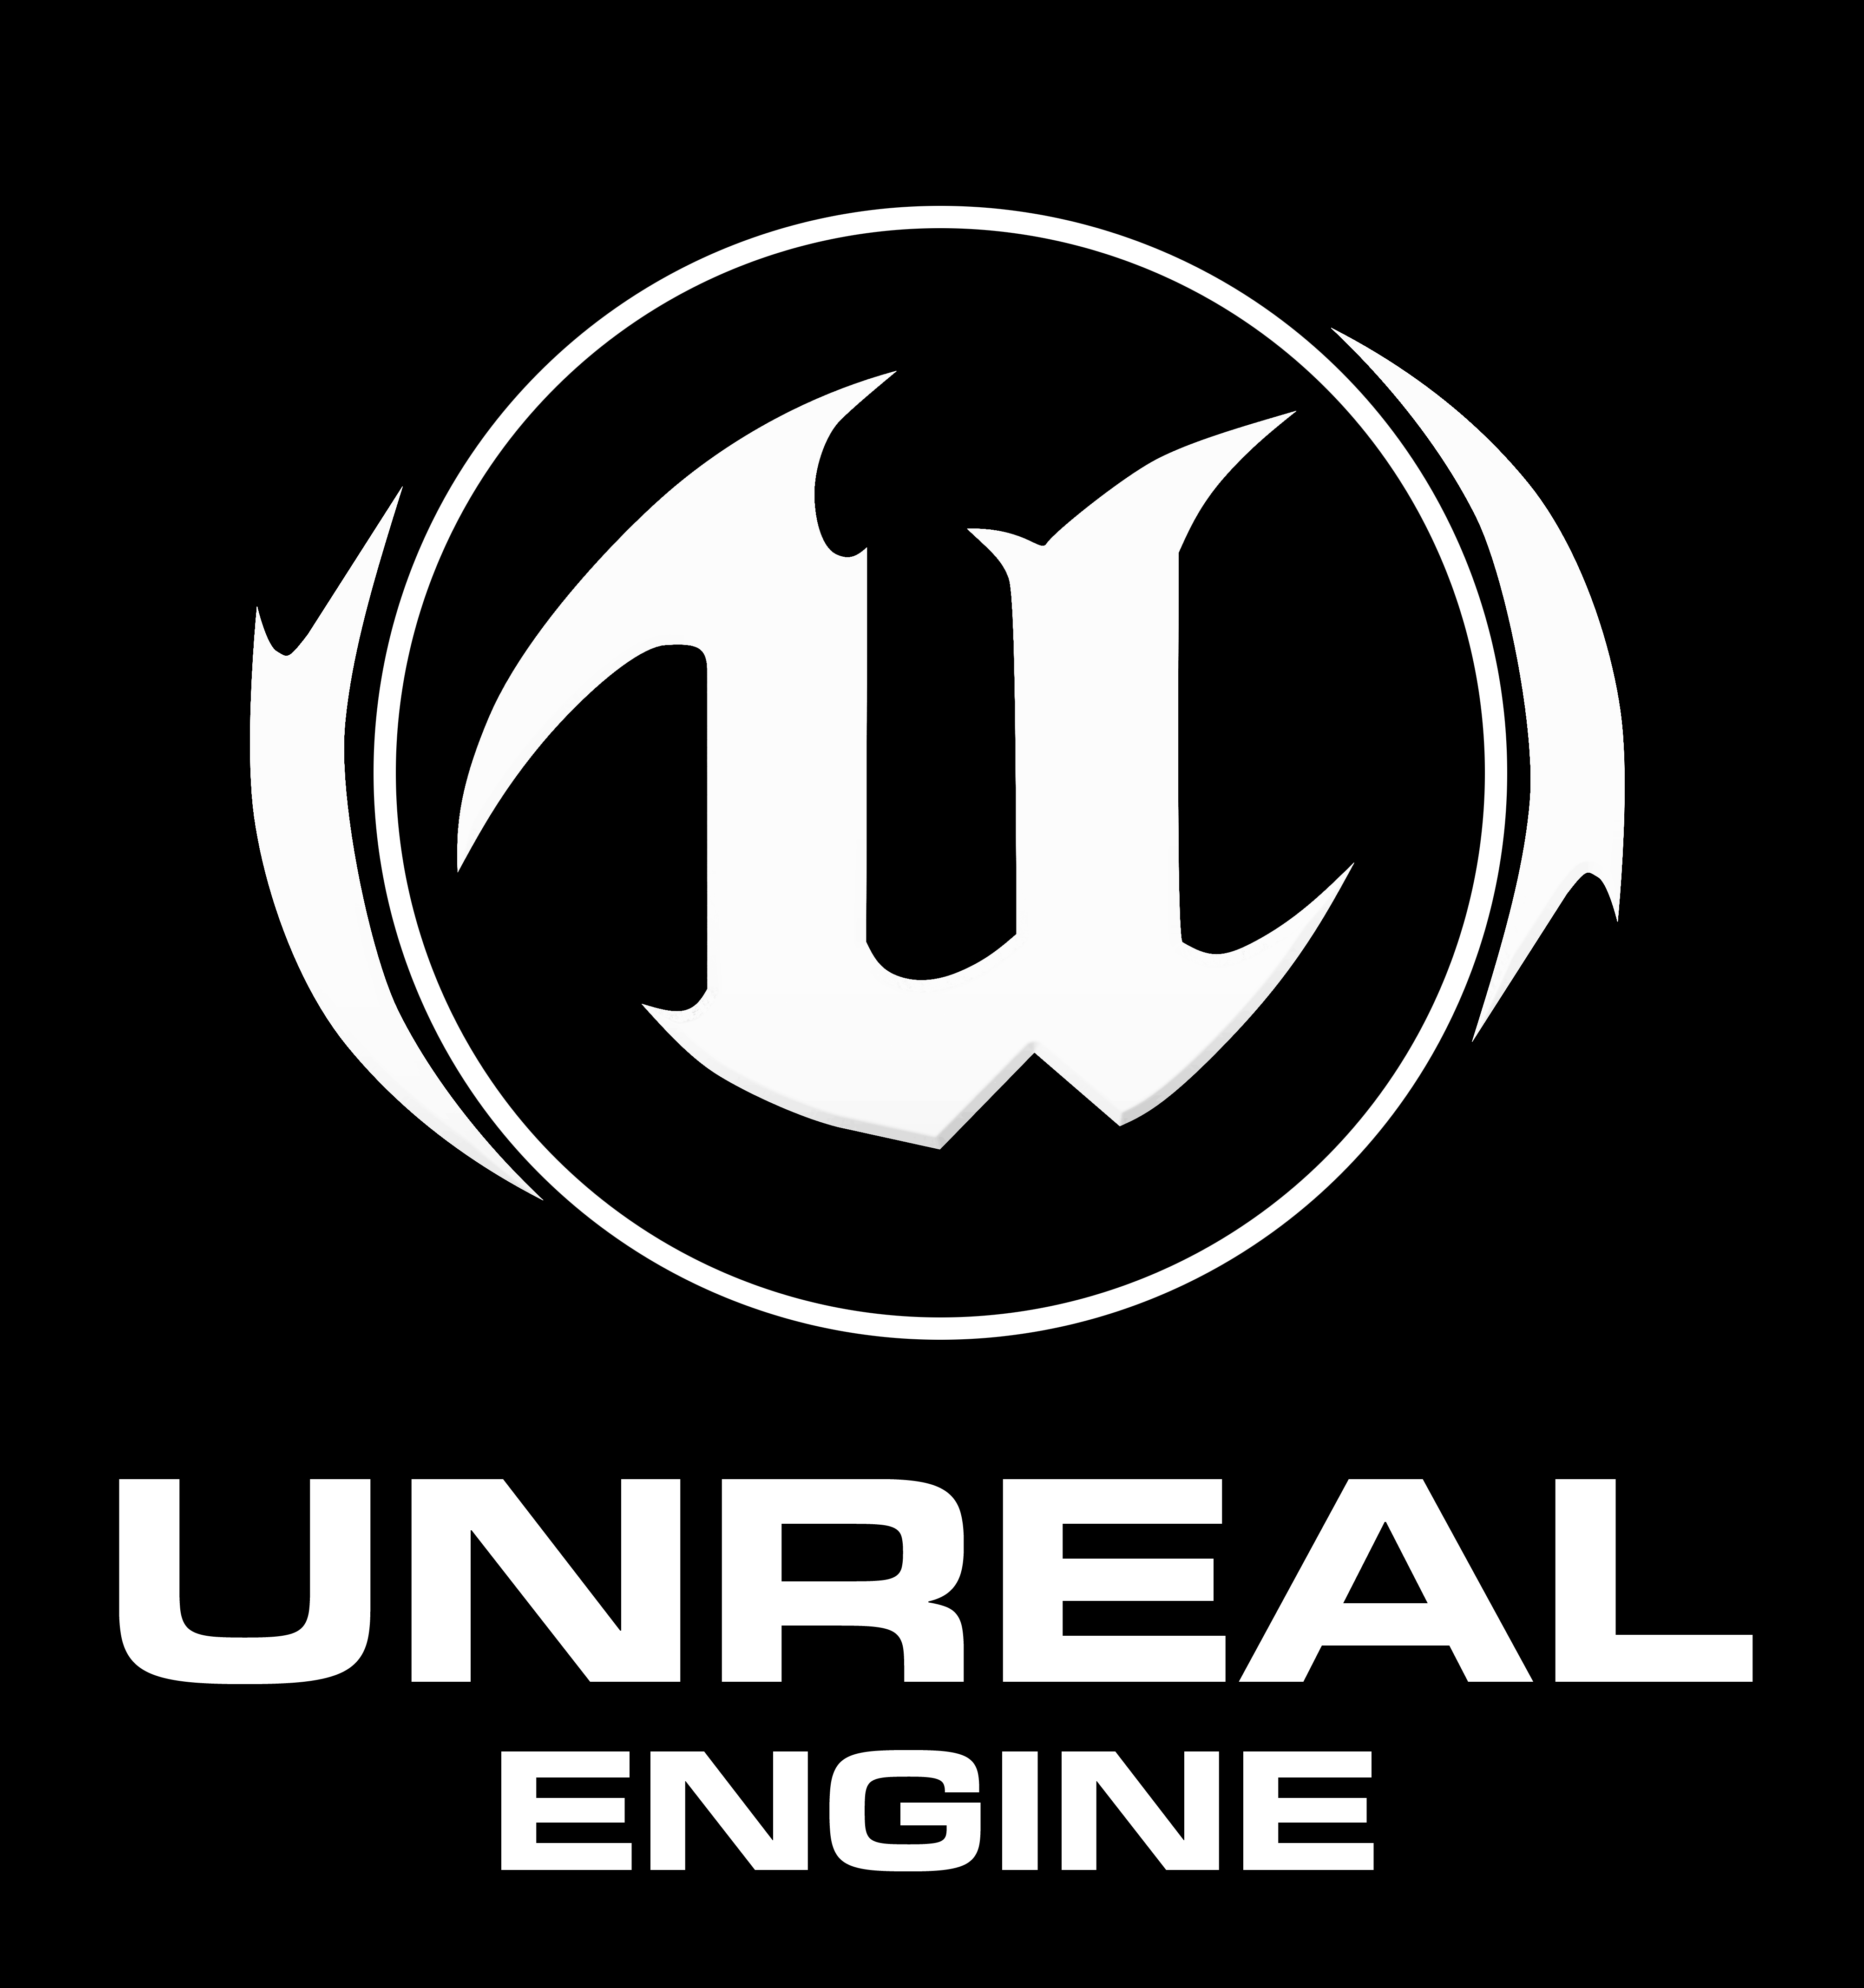 Unreal Logo